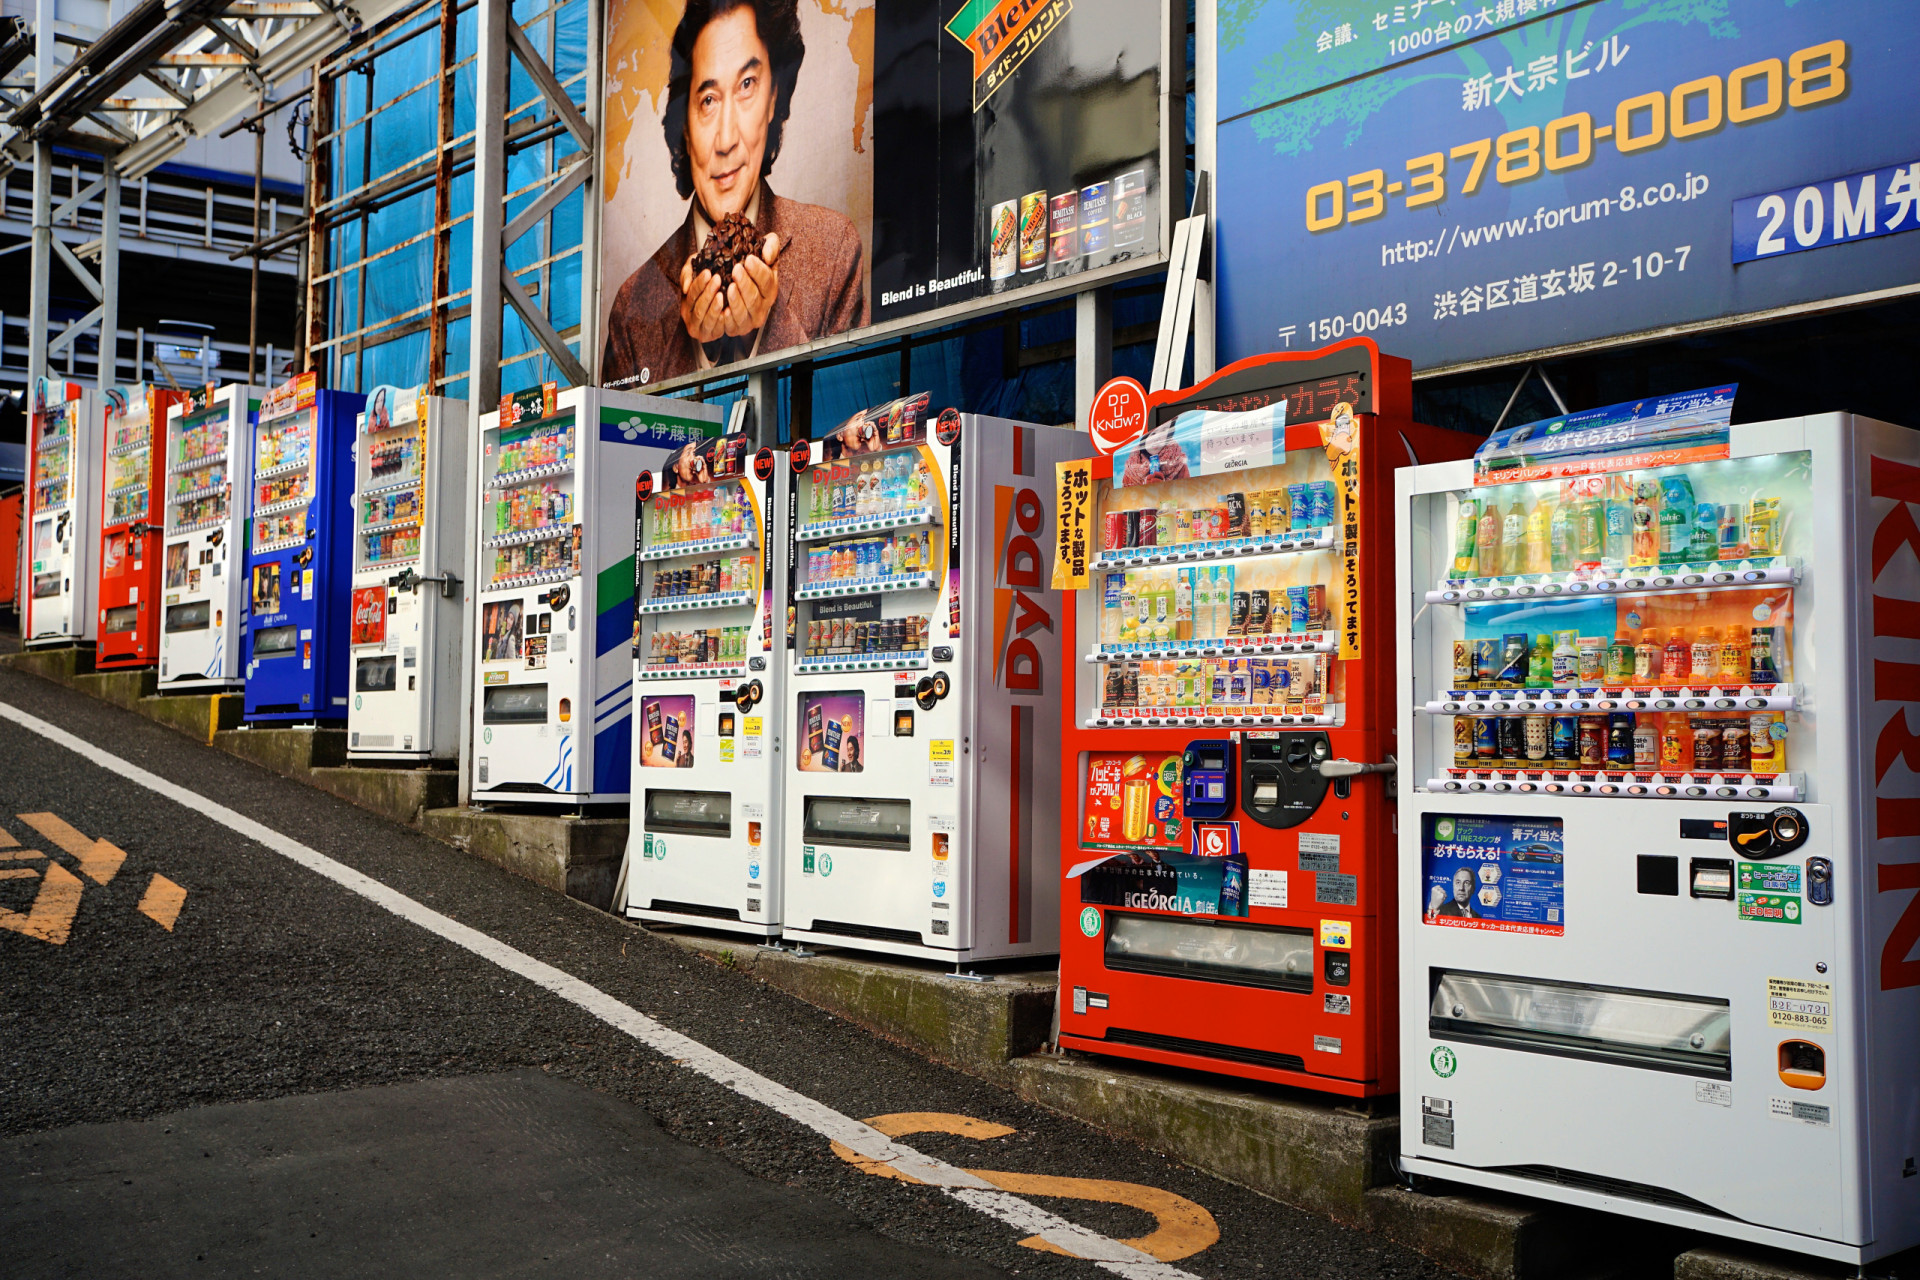 <p>Les distributeurs automatiques sont légion au Japon. Et non, on n'exagère pas du tout: il y en a plus de quatre millions dans le pays ! Dans ces machines, vous trouverez un large éventail de produits à vendre, des sodas et cafés habituels aux parapluies, en passant par des figurines, de la soupe et des produits dérivés de mangas, pour n'en citer que quelques-uns.</p>